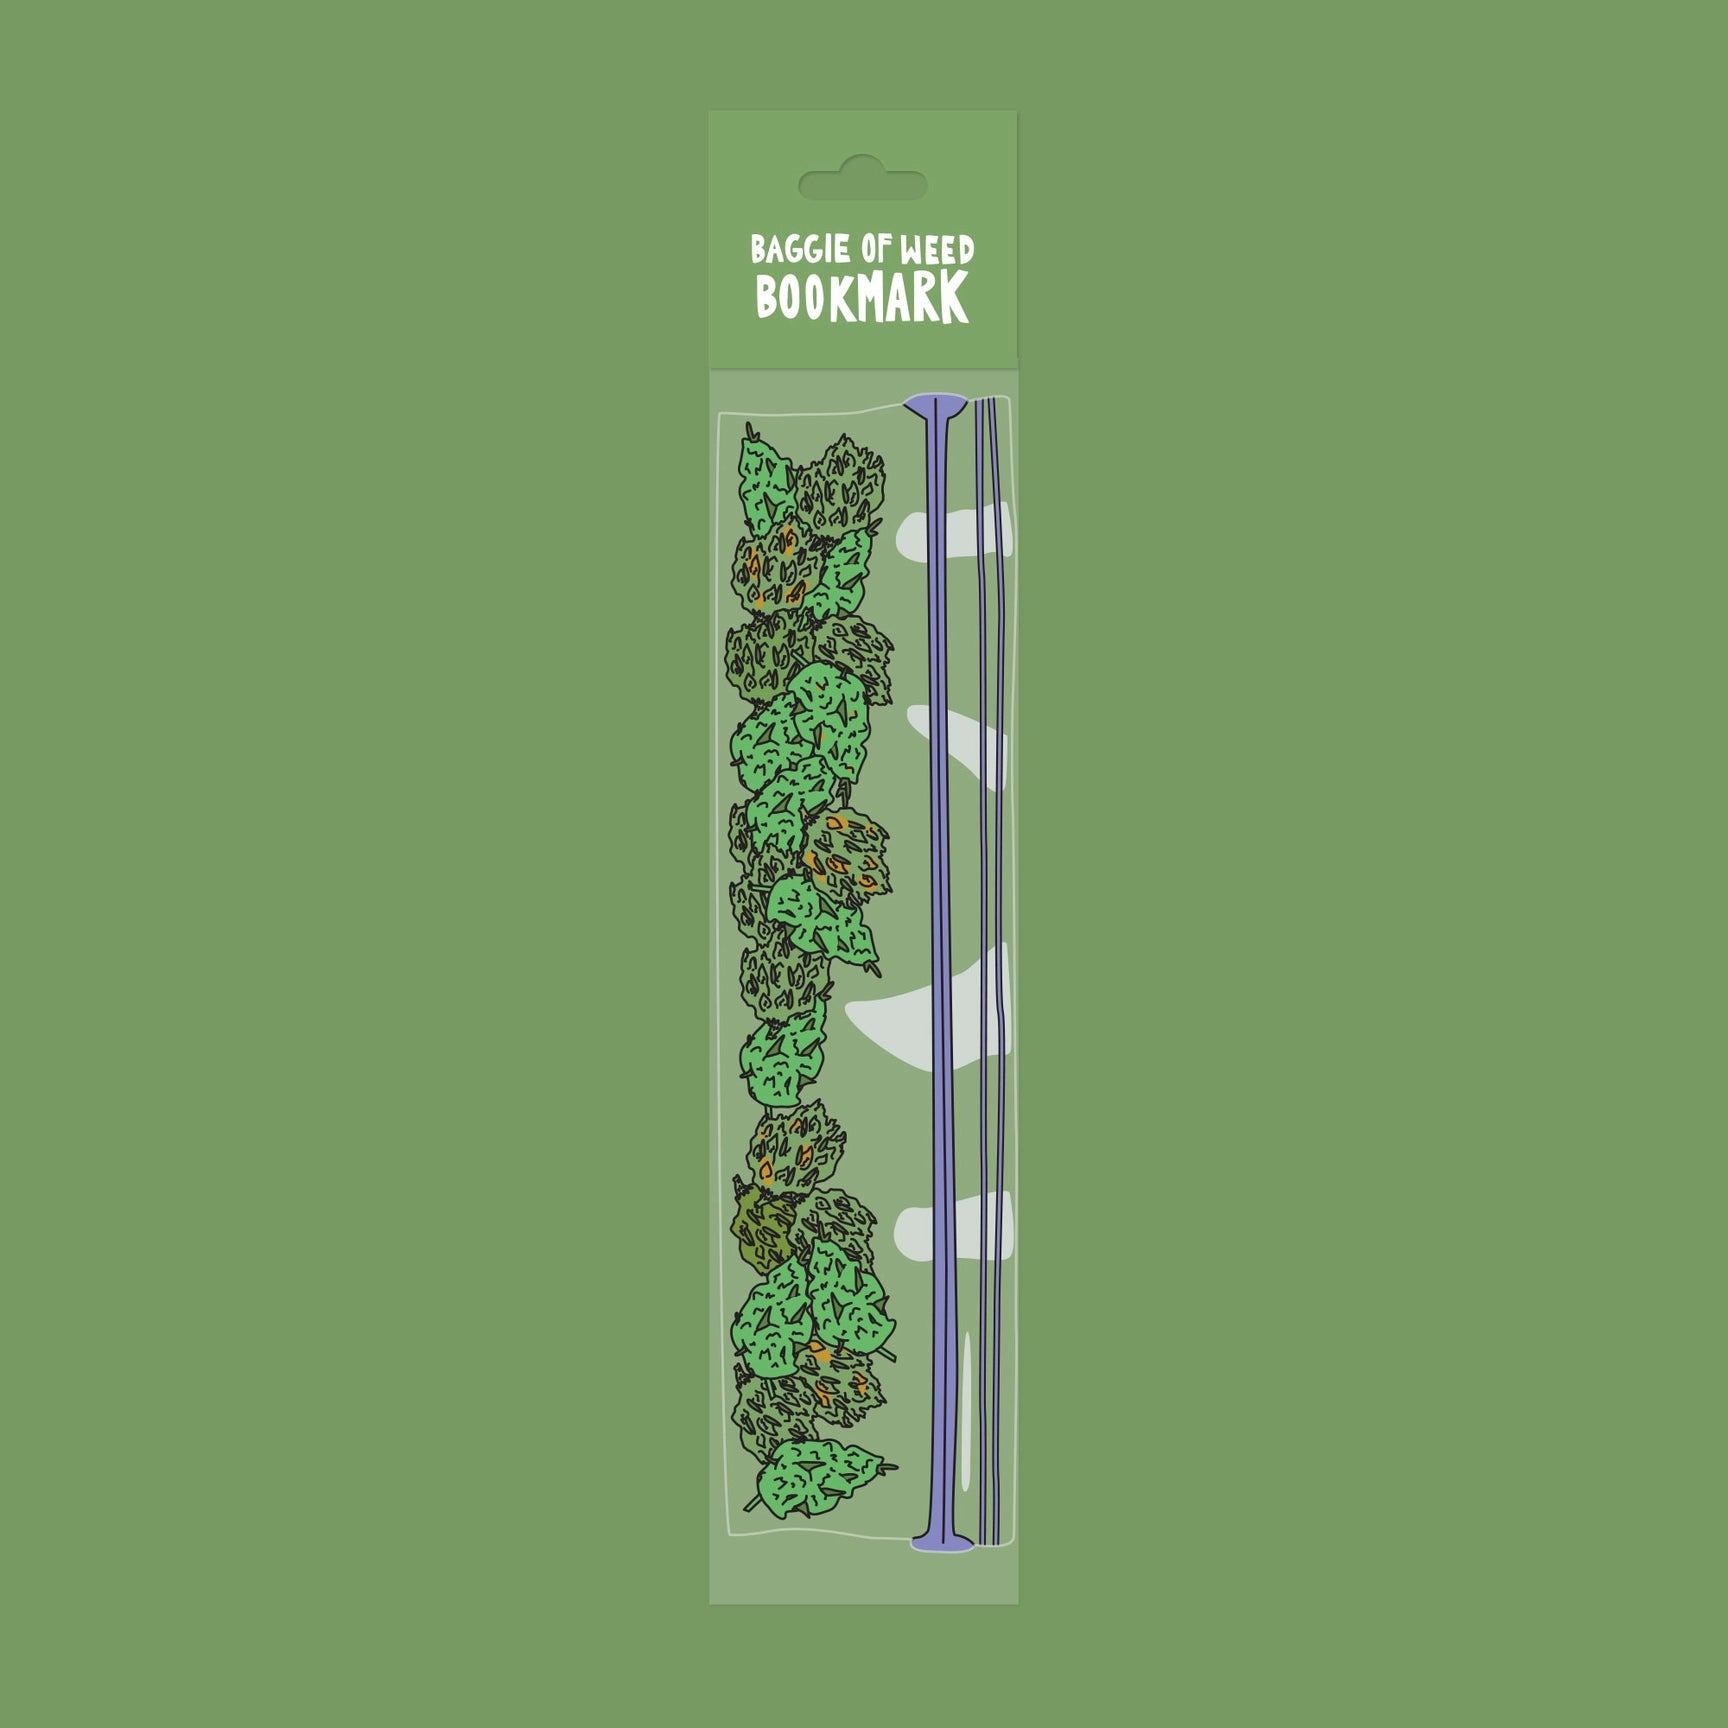 Baggie Of Weed Bookmark